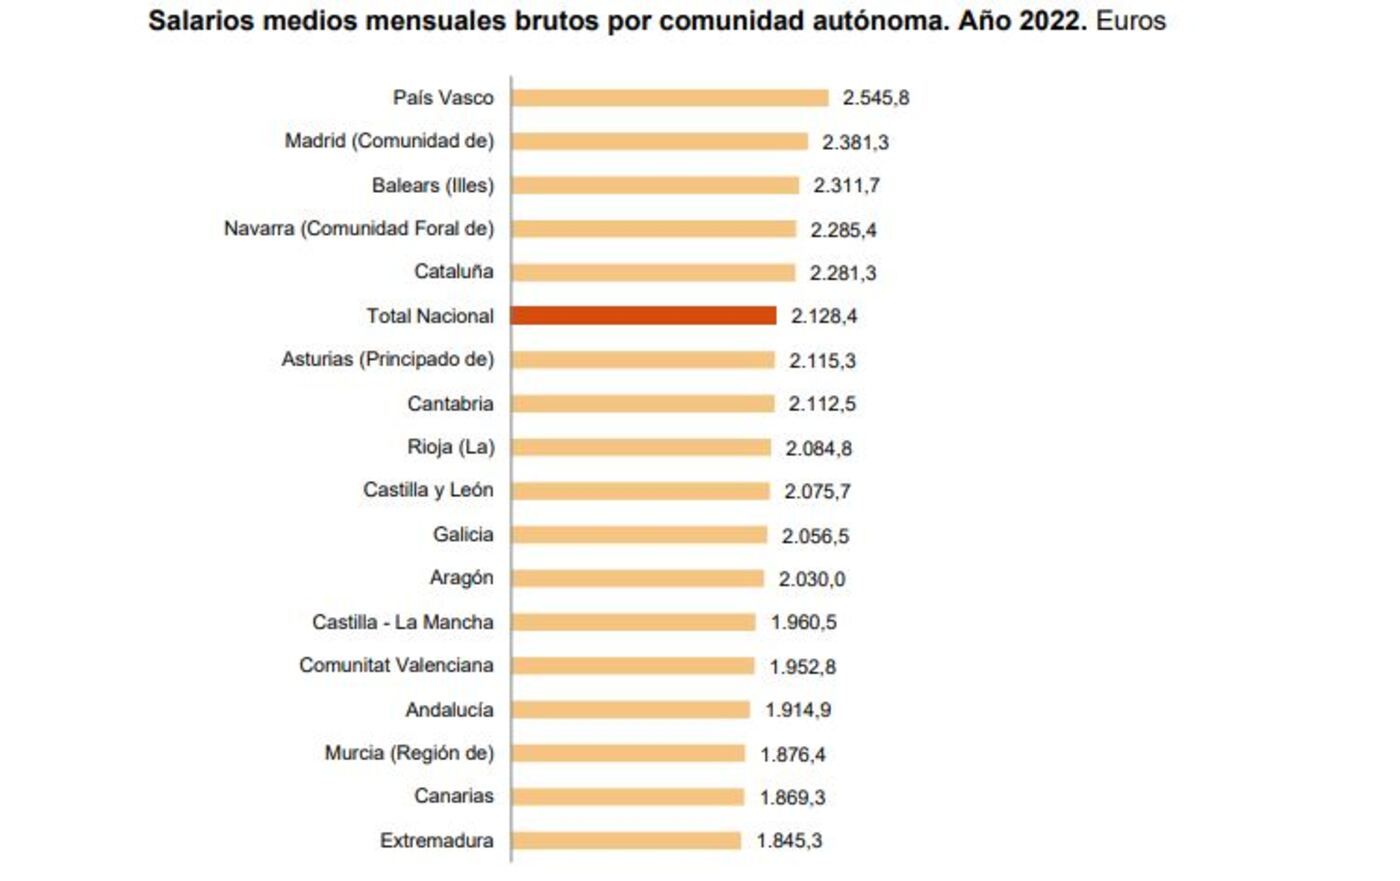 Salario medio bruto por comunidad autónoma en 2022, según el INE